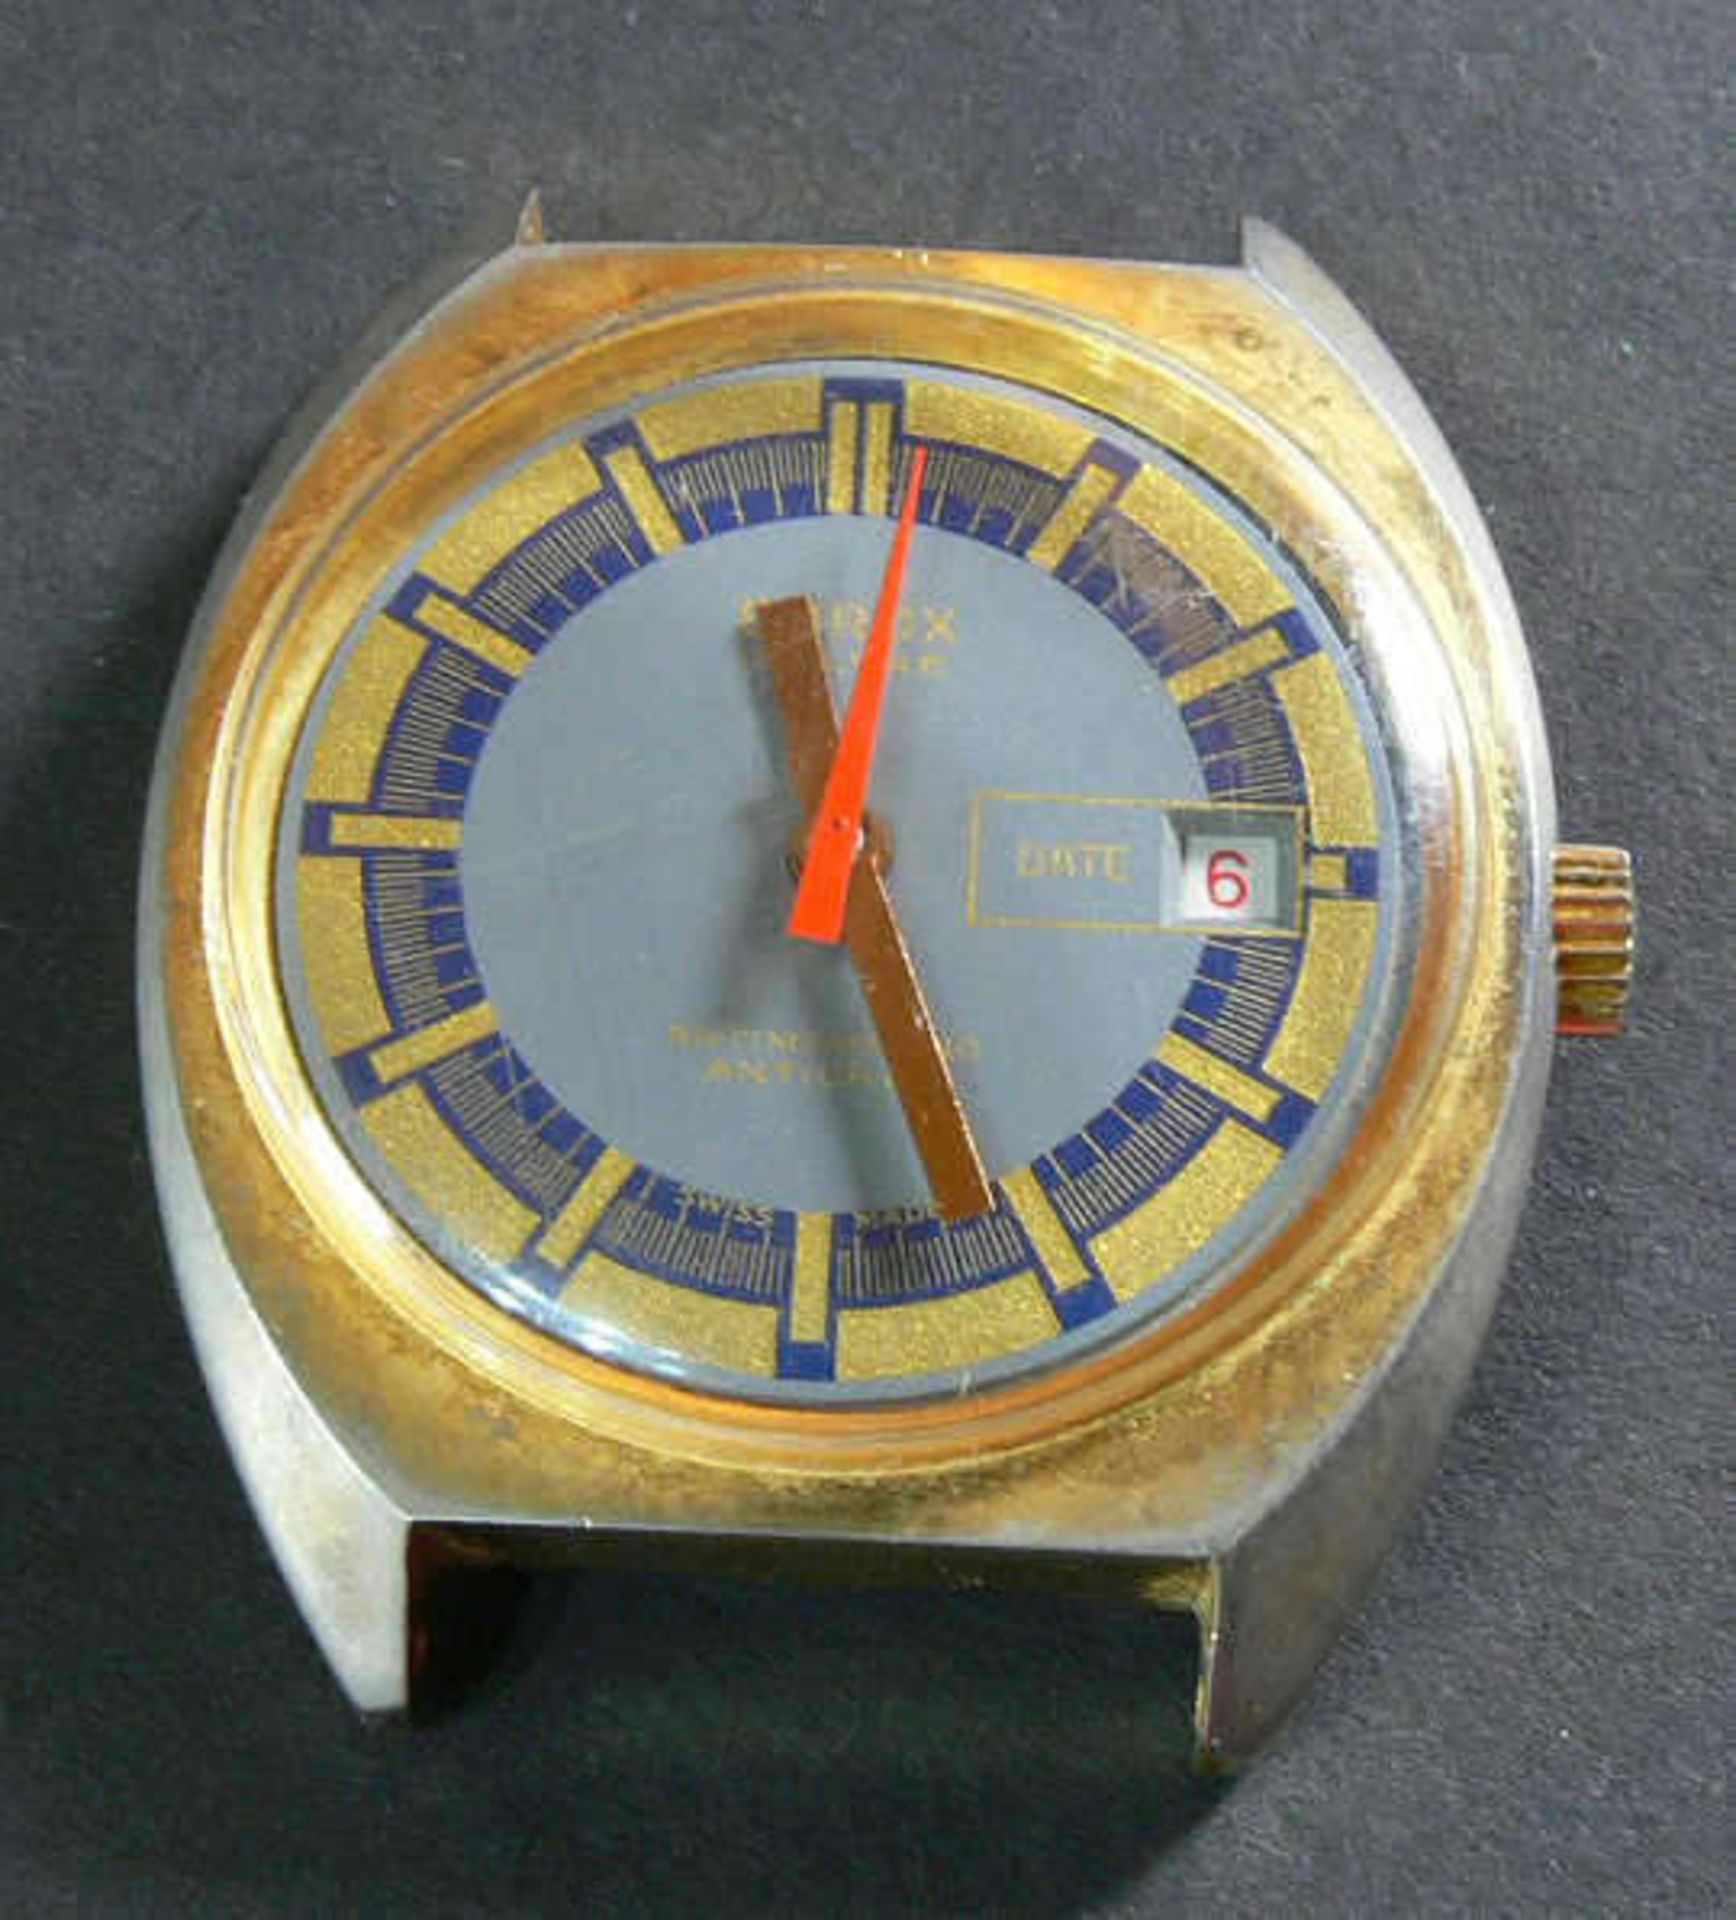 Emrox de Luxe Automatic Herrenuhr. Blau/goldenes Ziffernblatt. Datum auf der "3". Die Uhr läuft an.